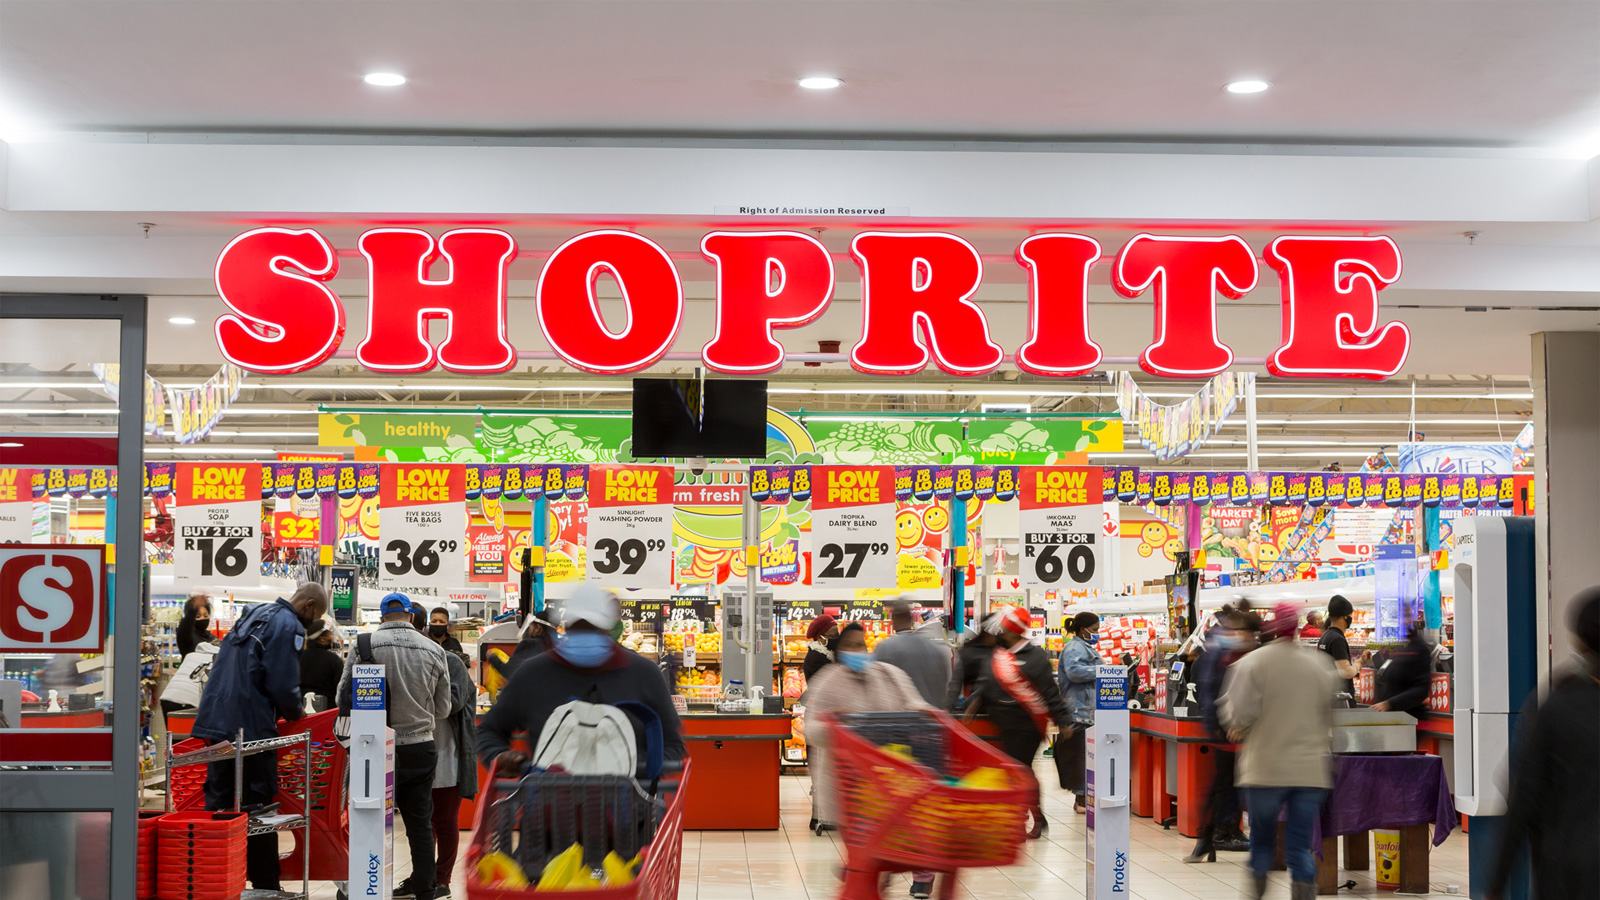 Shoprite supermarket